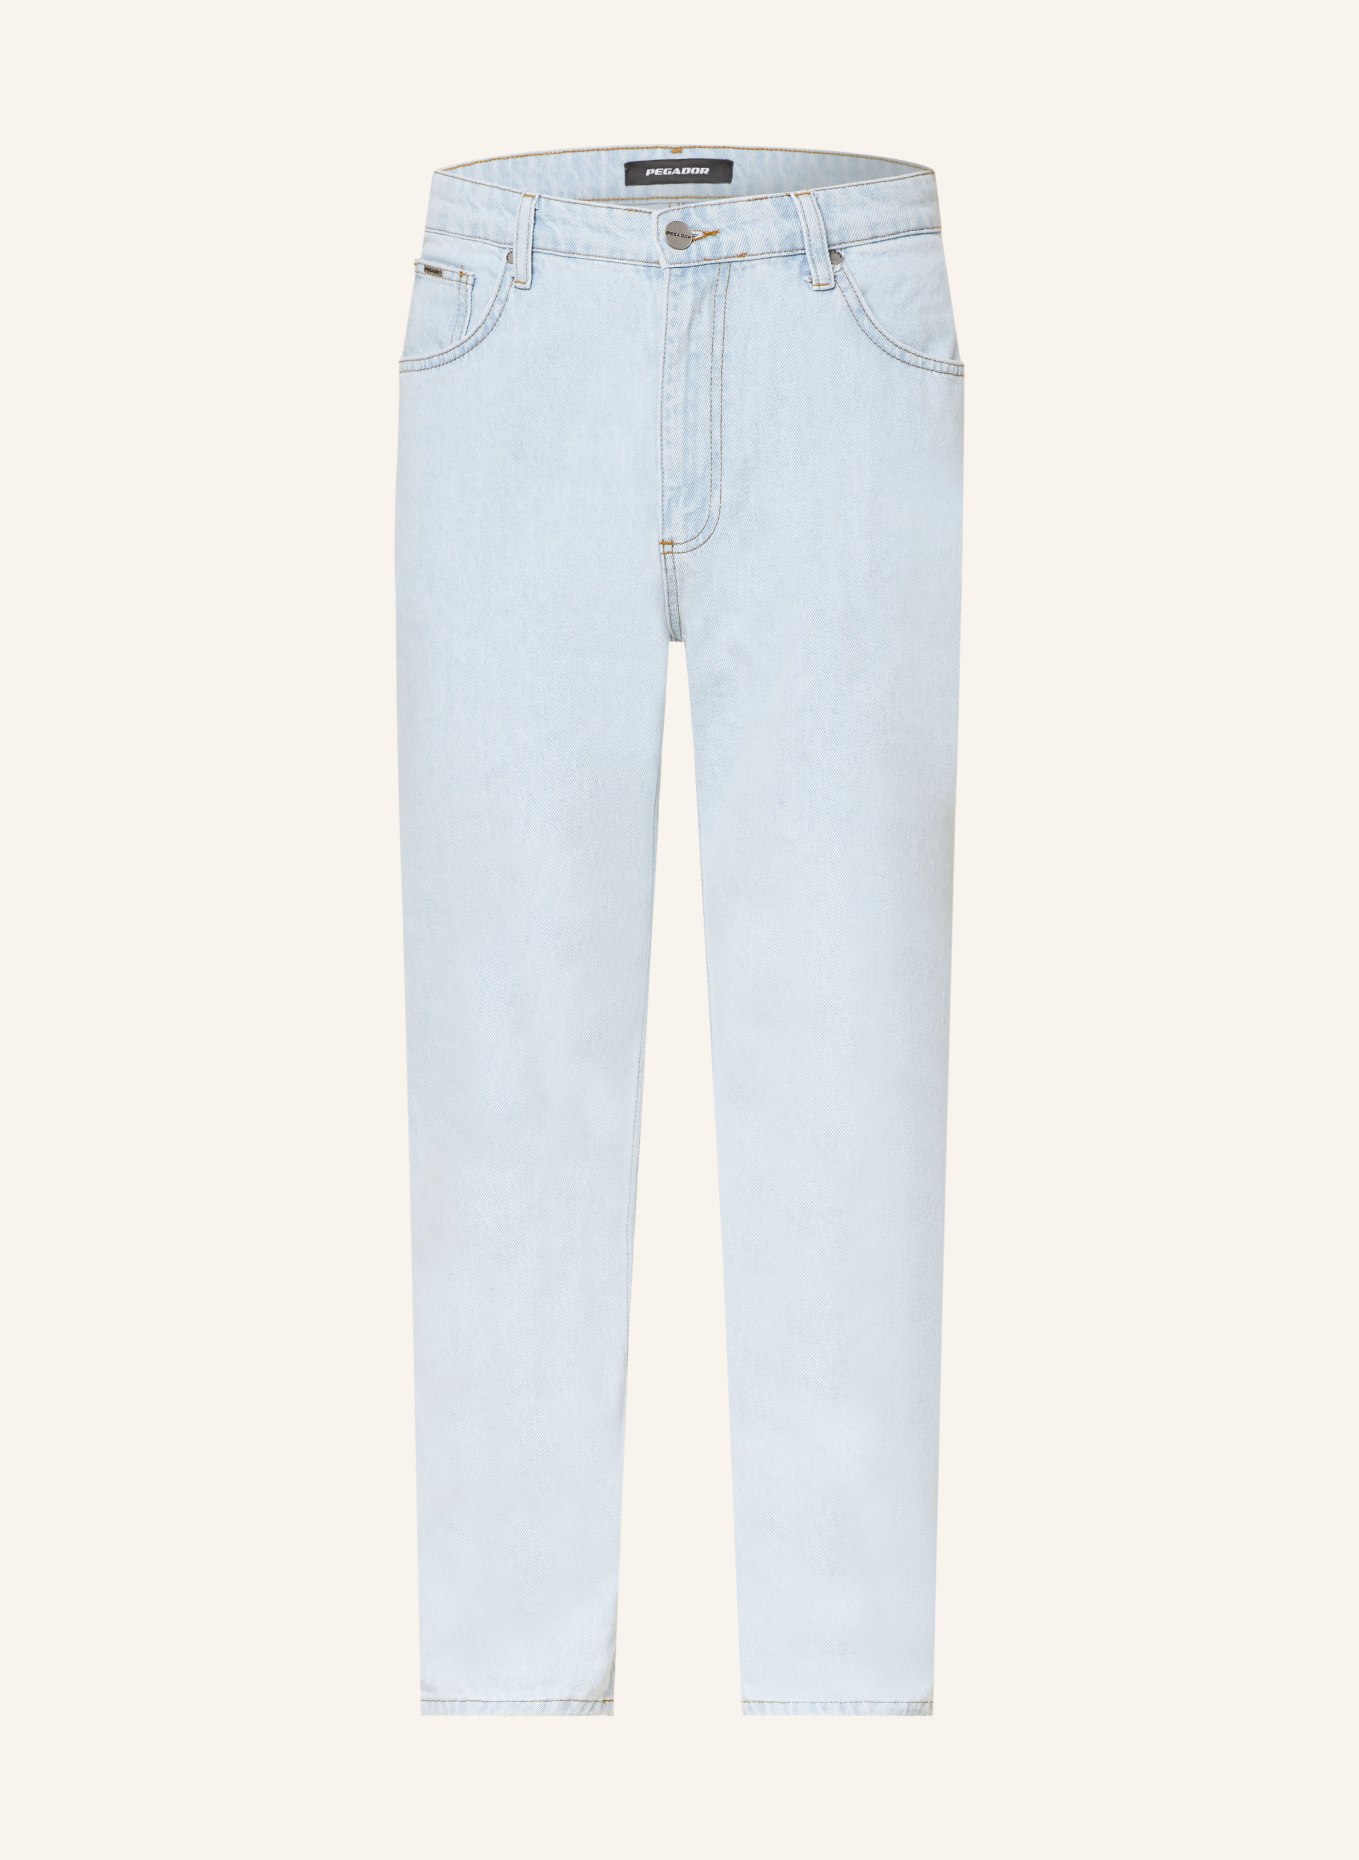 PEGADOR Jeans BALTRA regular fit, Color: 420 washed cold blue (Image 1)